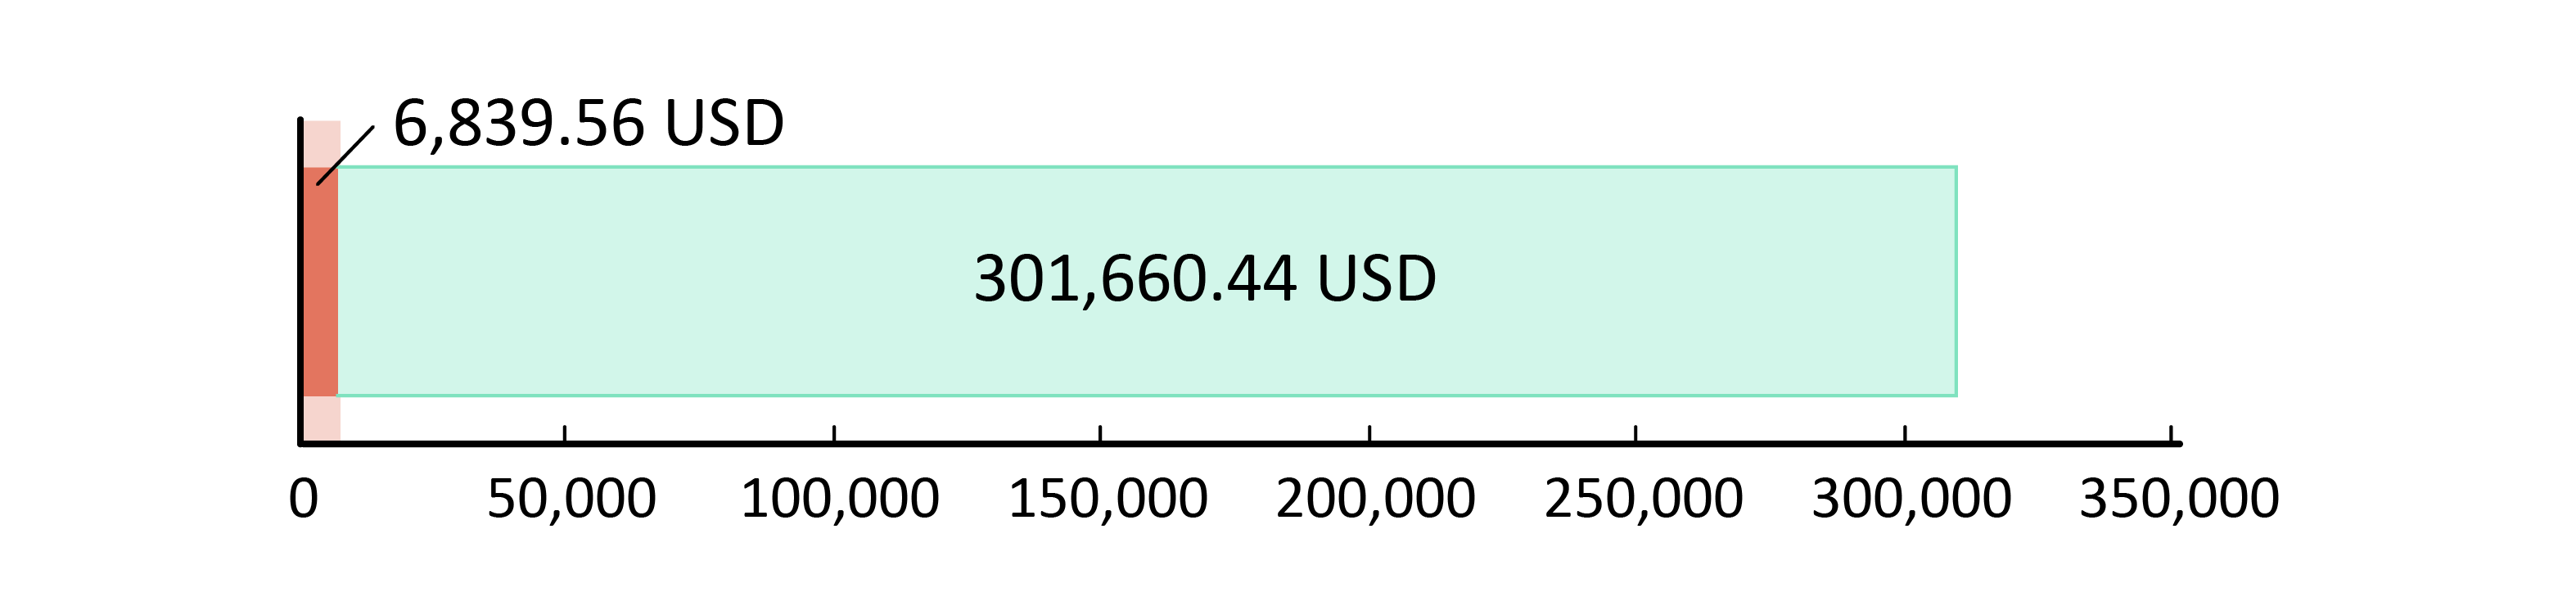 6,839.56 USD bağışlandı; 301,660.44 USD kaldı